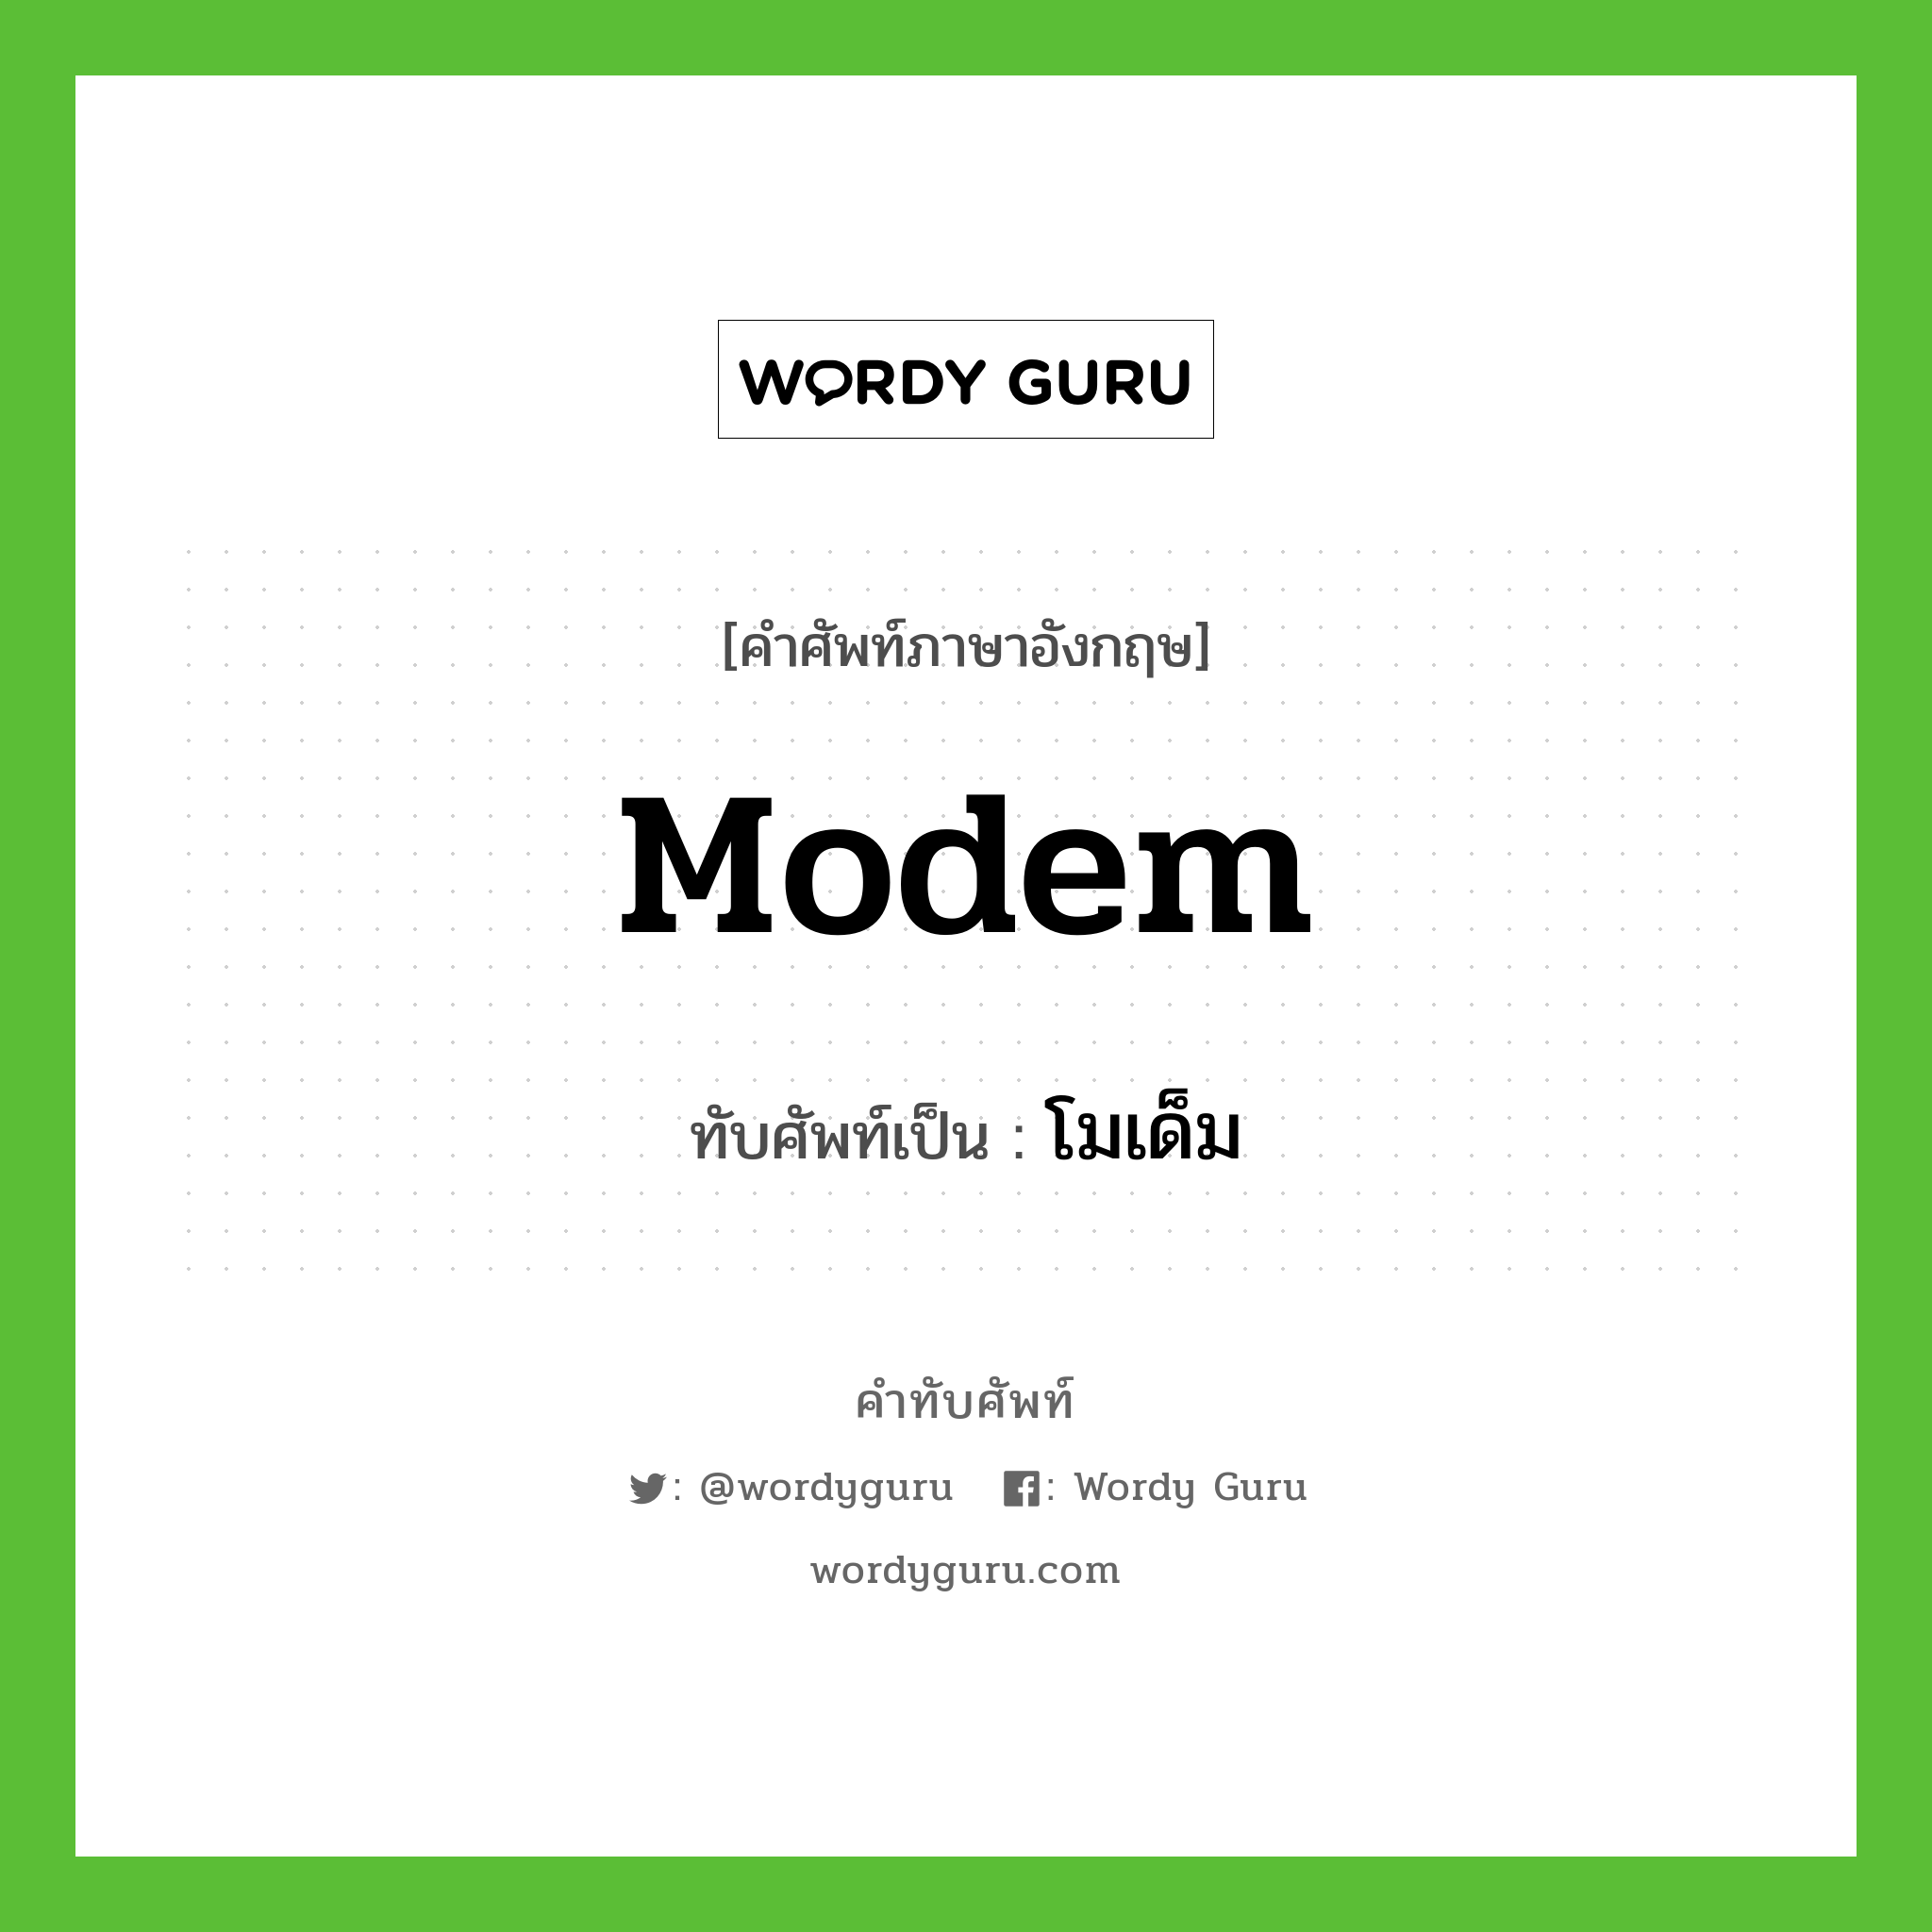 modem เขียนเป็นคำไทยว่าอะไร?, คำศัพท์ภาษาอังกฤษ modem ทับศัพท์เป็น โมเด็ม